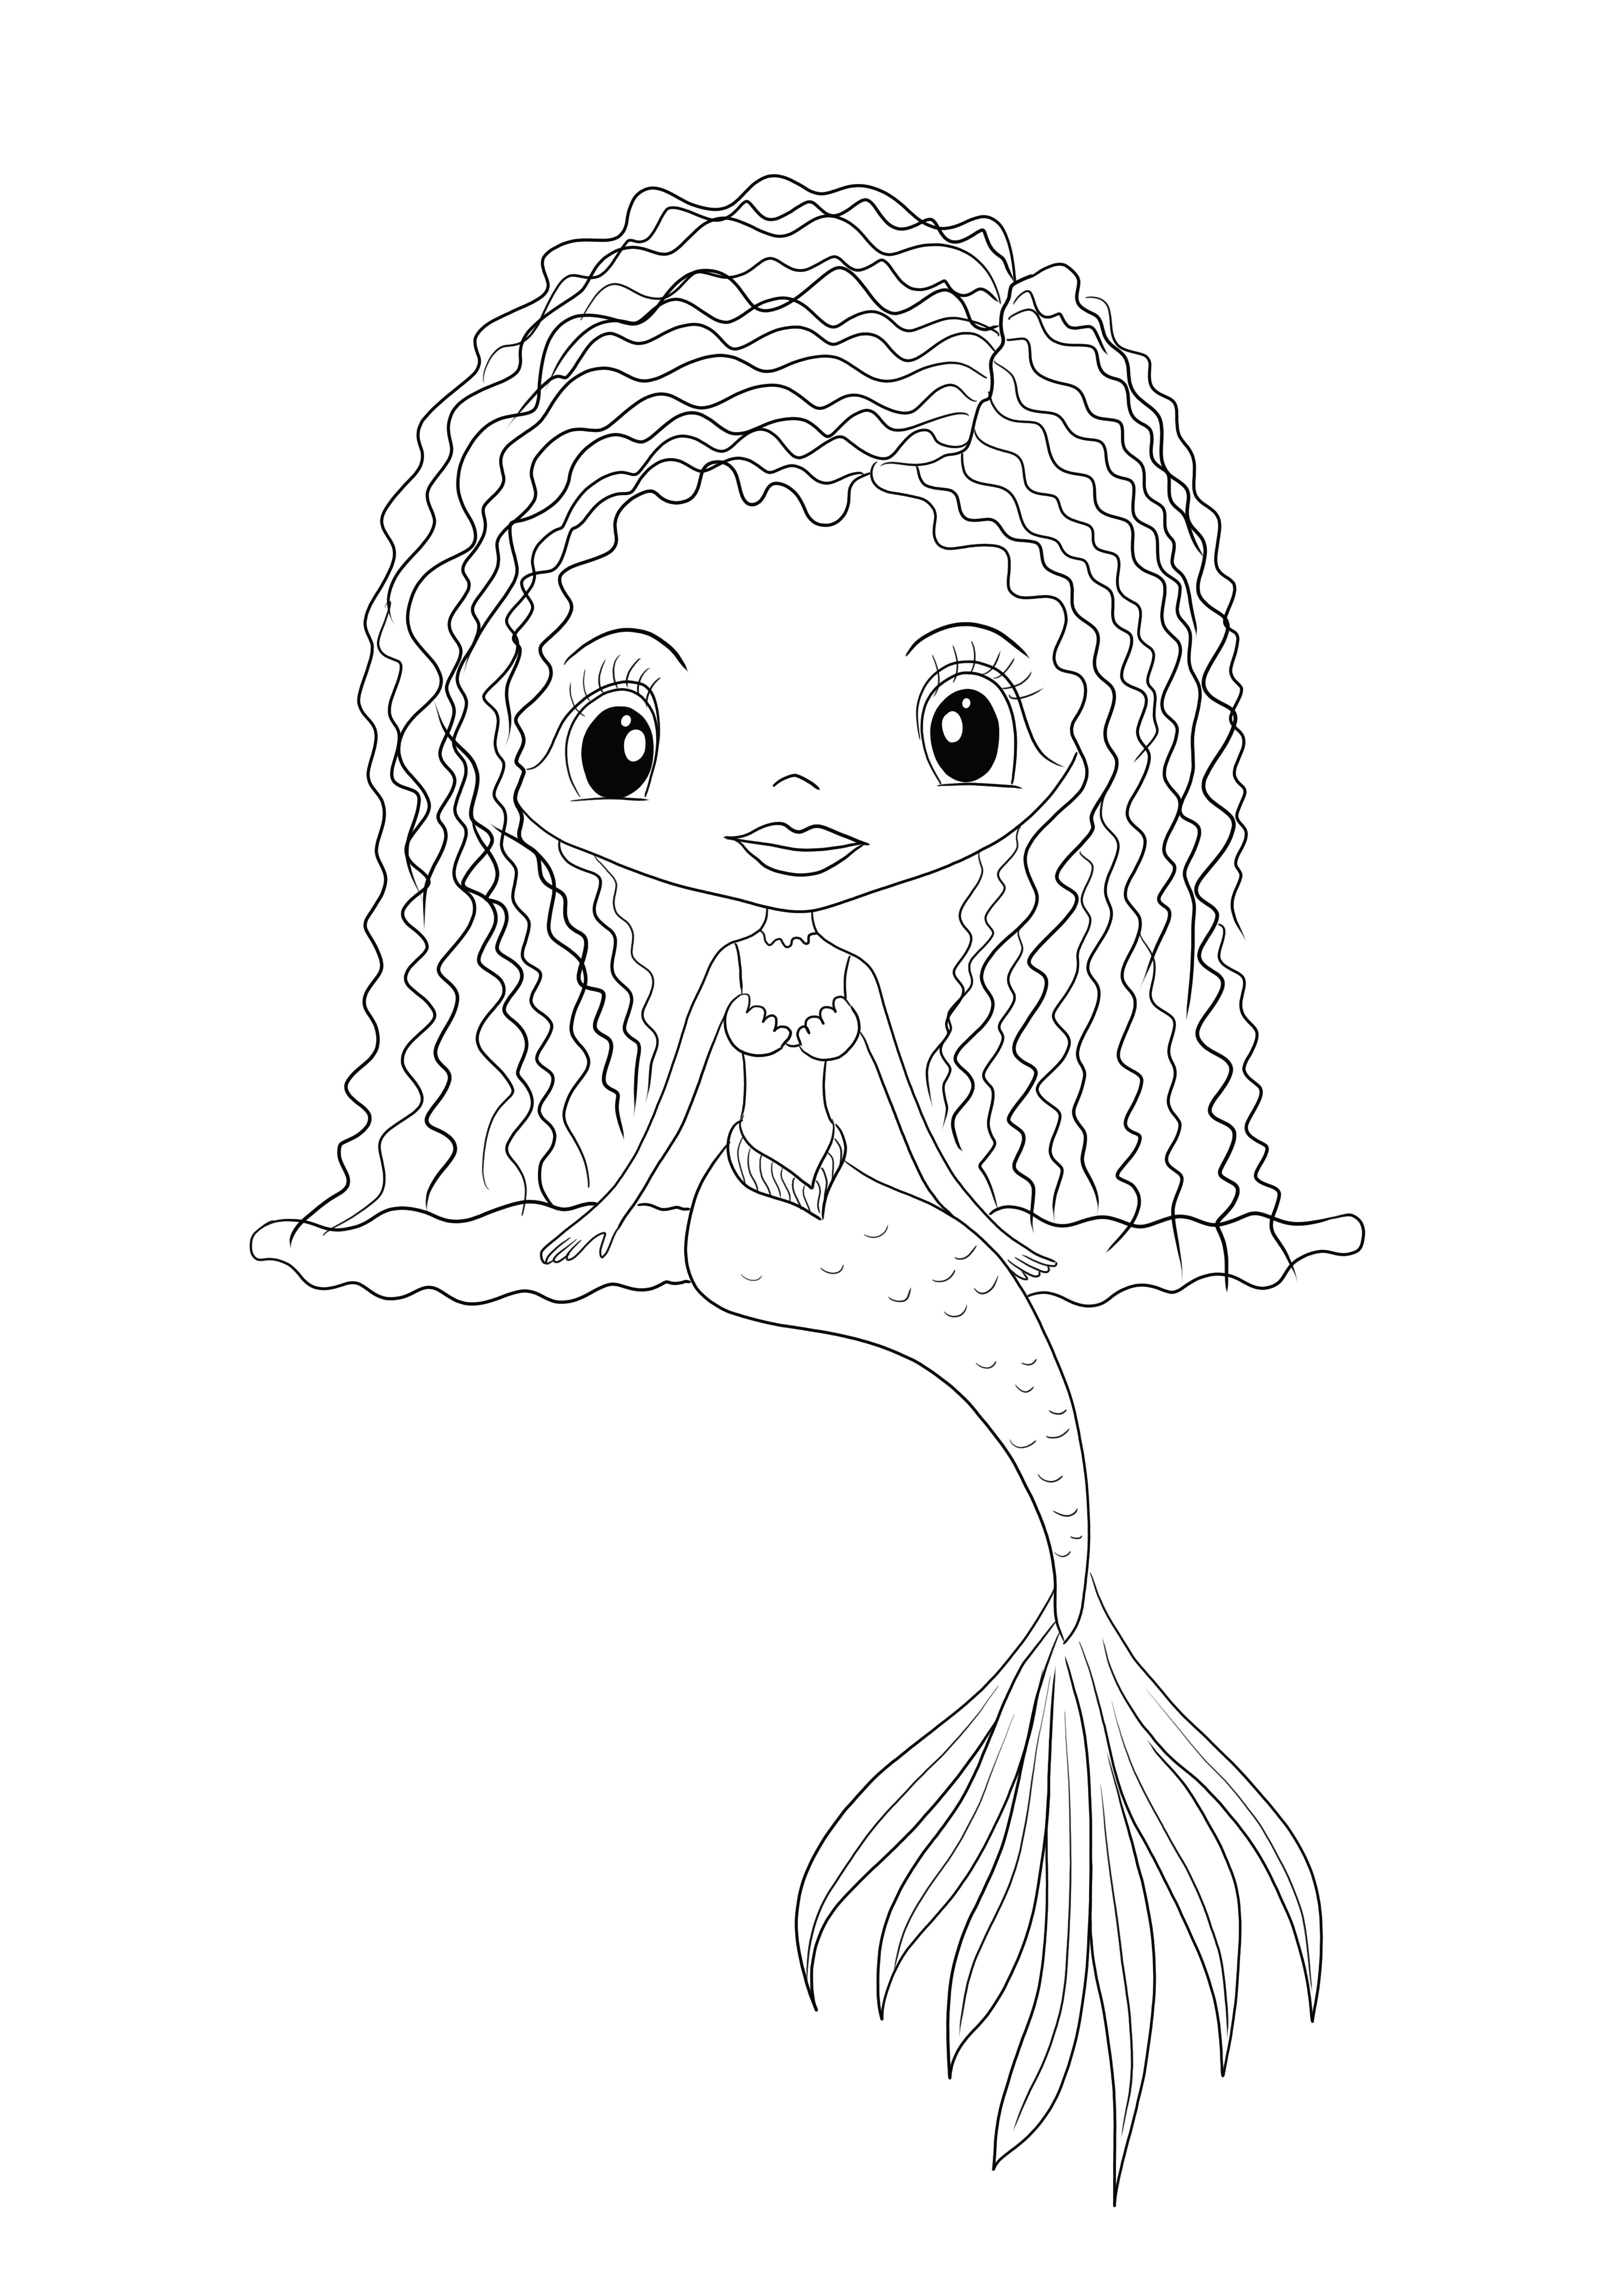 Gratis printen van een meisje zeemeermin kleurafbeelding voor kinderen van alle leeftijden kleurplaat